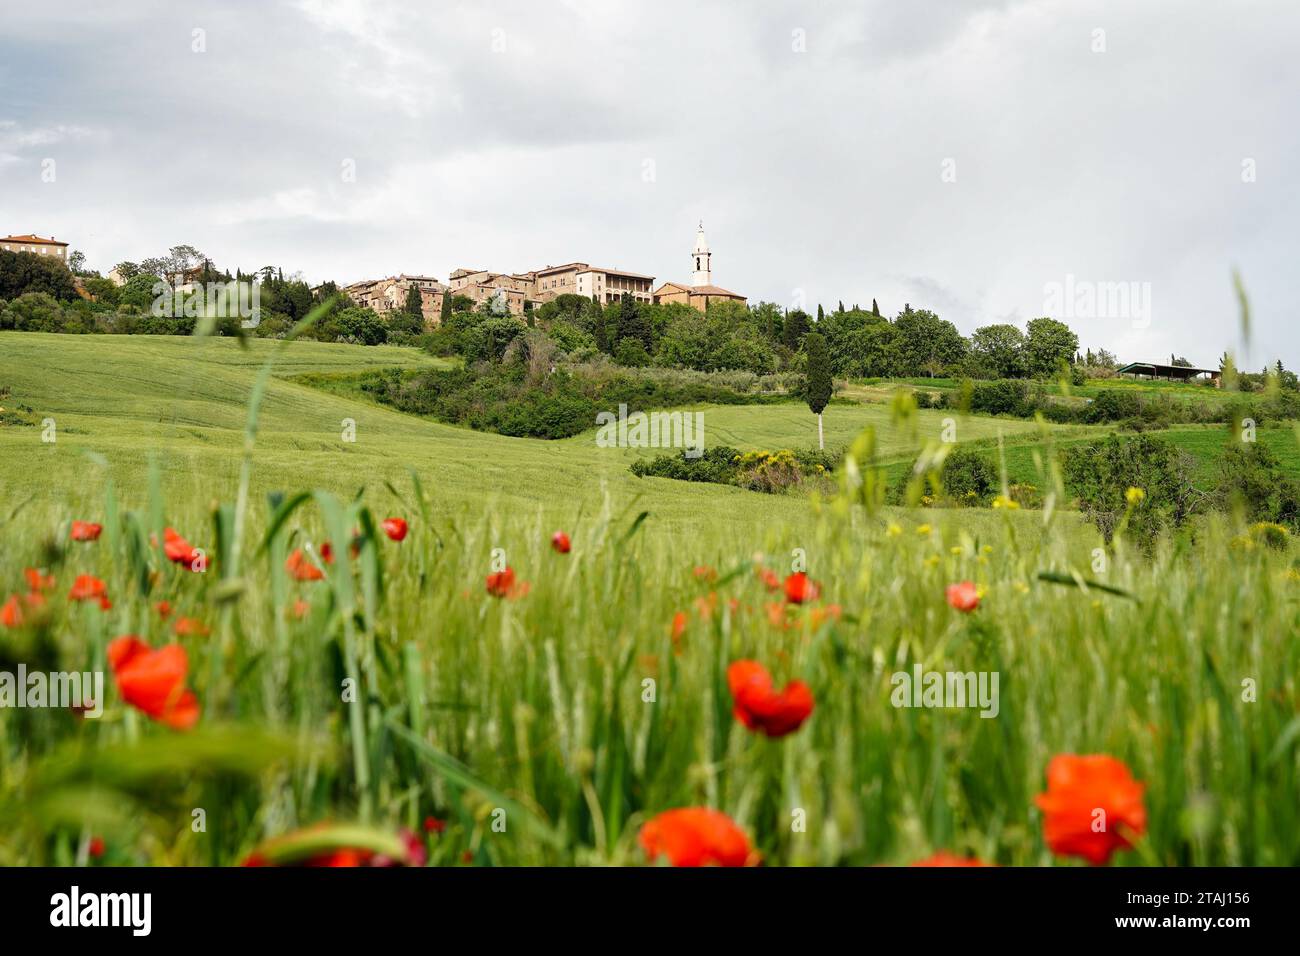 Vista della splendida città rinascimentale di Pienza in primavera, paesaggio toscano con campi verdi e papaveri rossi in primo piano. Pienza, Toscana, Italia Foto Stock